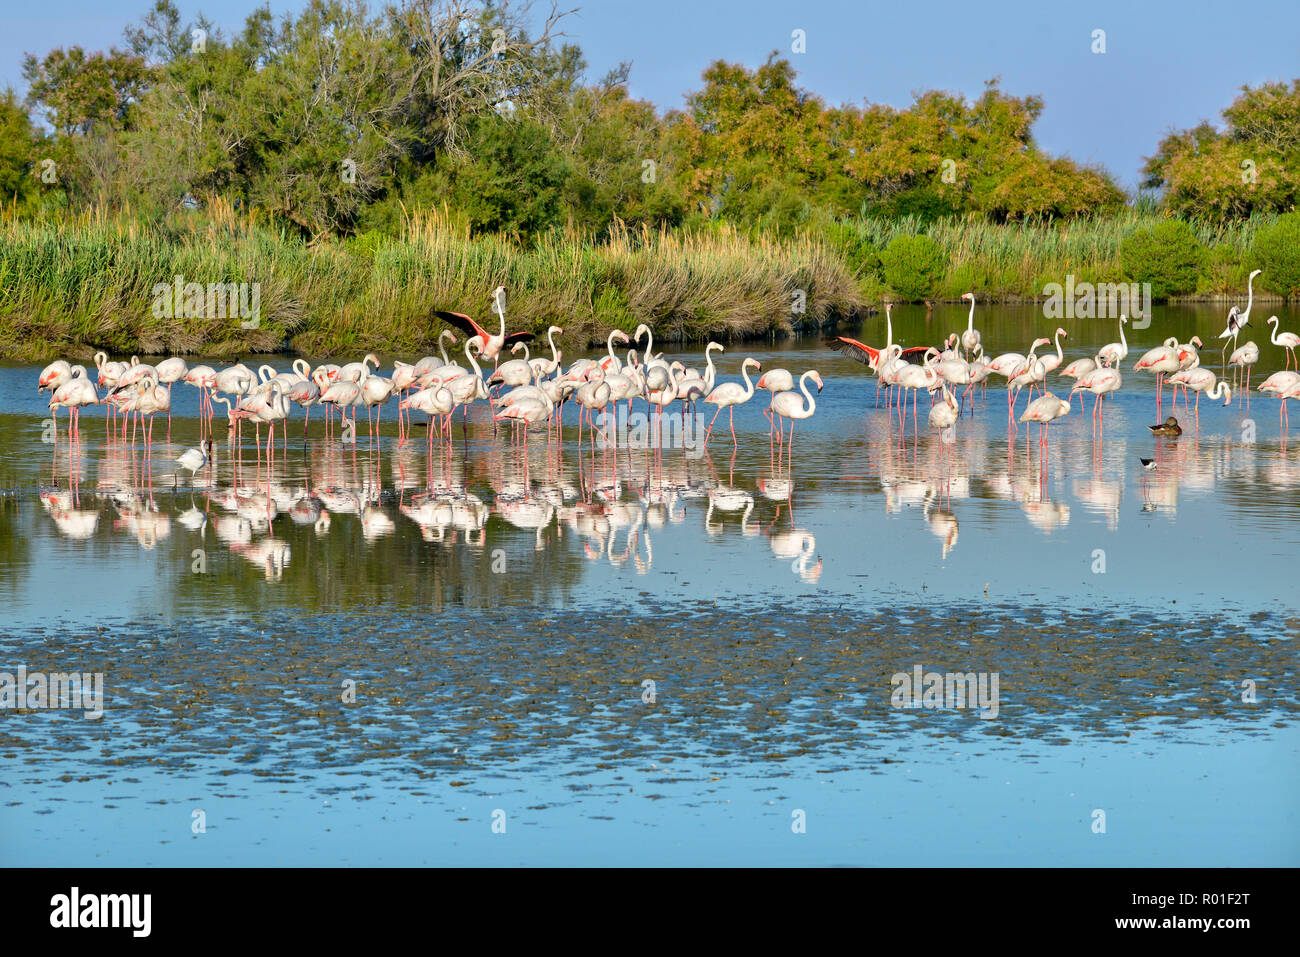 Gruppe von Flamingos (Phoenicopterus ruber) in Wasser mit großen Reflexion, in der Camargue ist ein natürlicher Region südlich von Arles, Frankreich Stockfoto